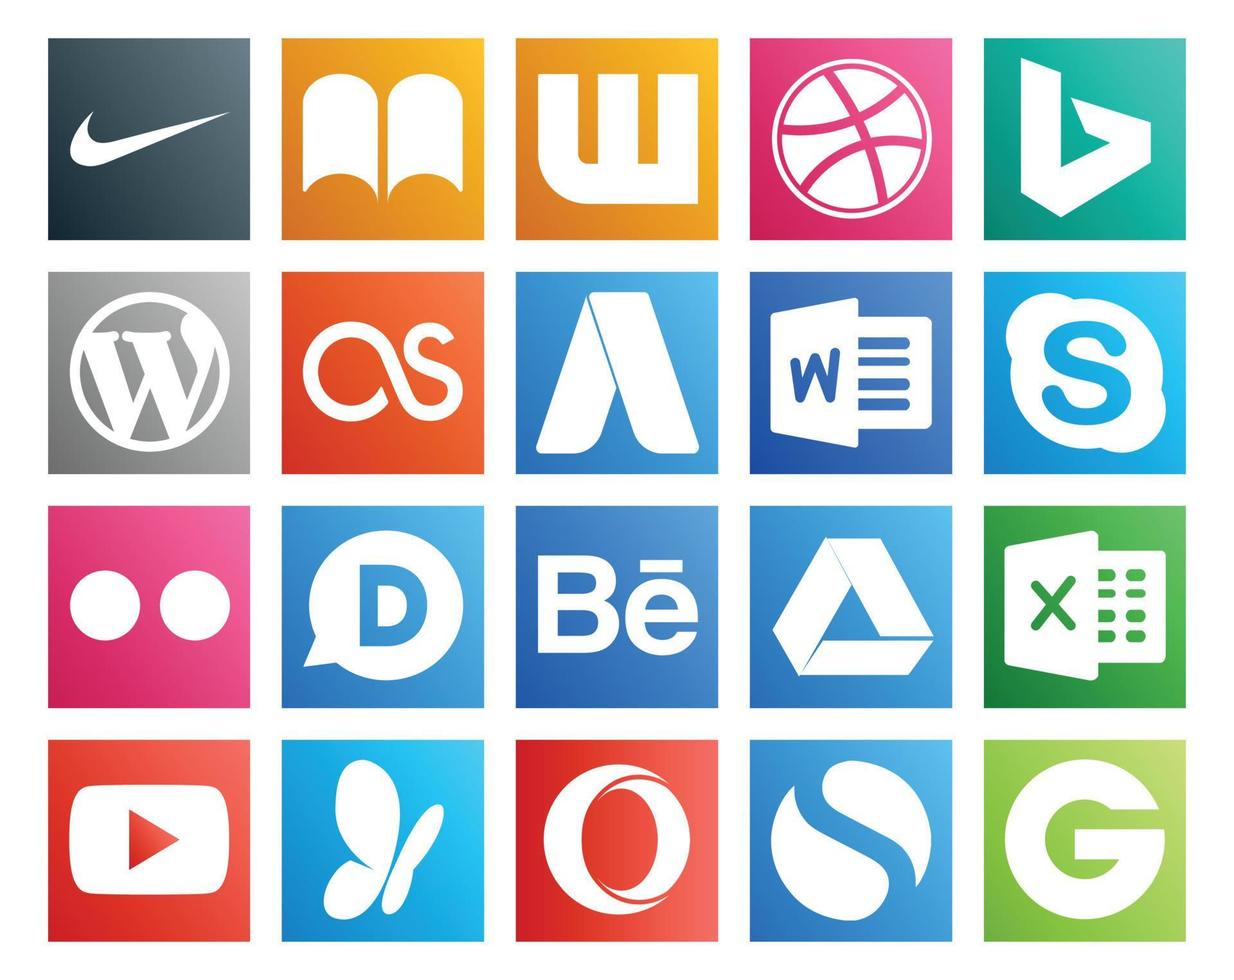 20 Symbolpakete für soziale Medien, einschließlich YouTube, Google Drive, AdWords, Behance, Flickr vektor